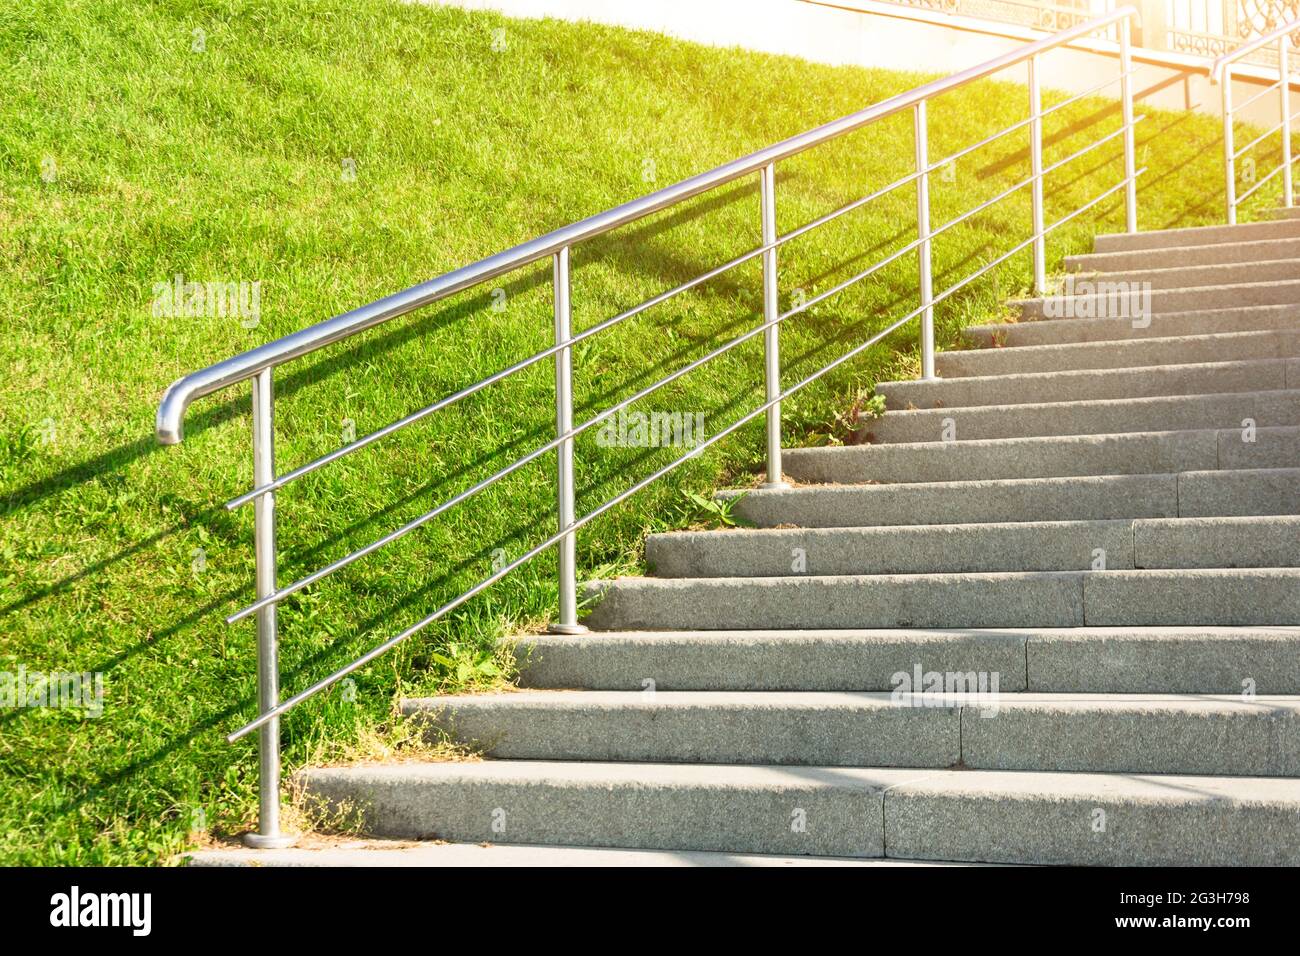 Steintreppe, die den Hang mit Rasengras, glänzendem Metall und Geländer  hinauf führt Stockfotografie - Alamy